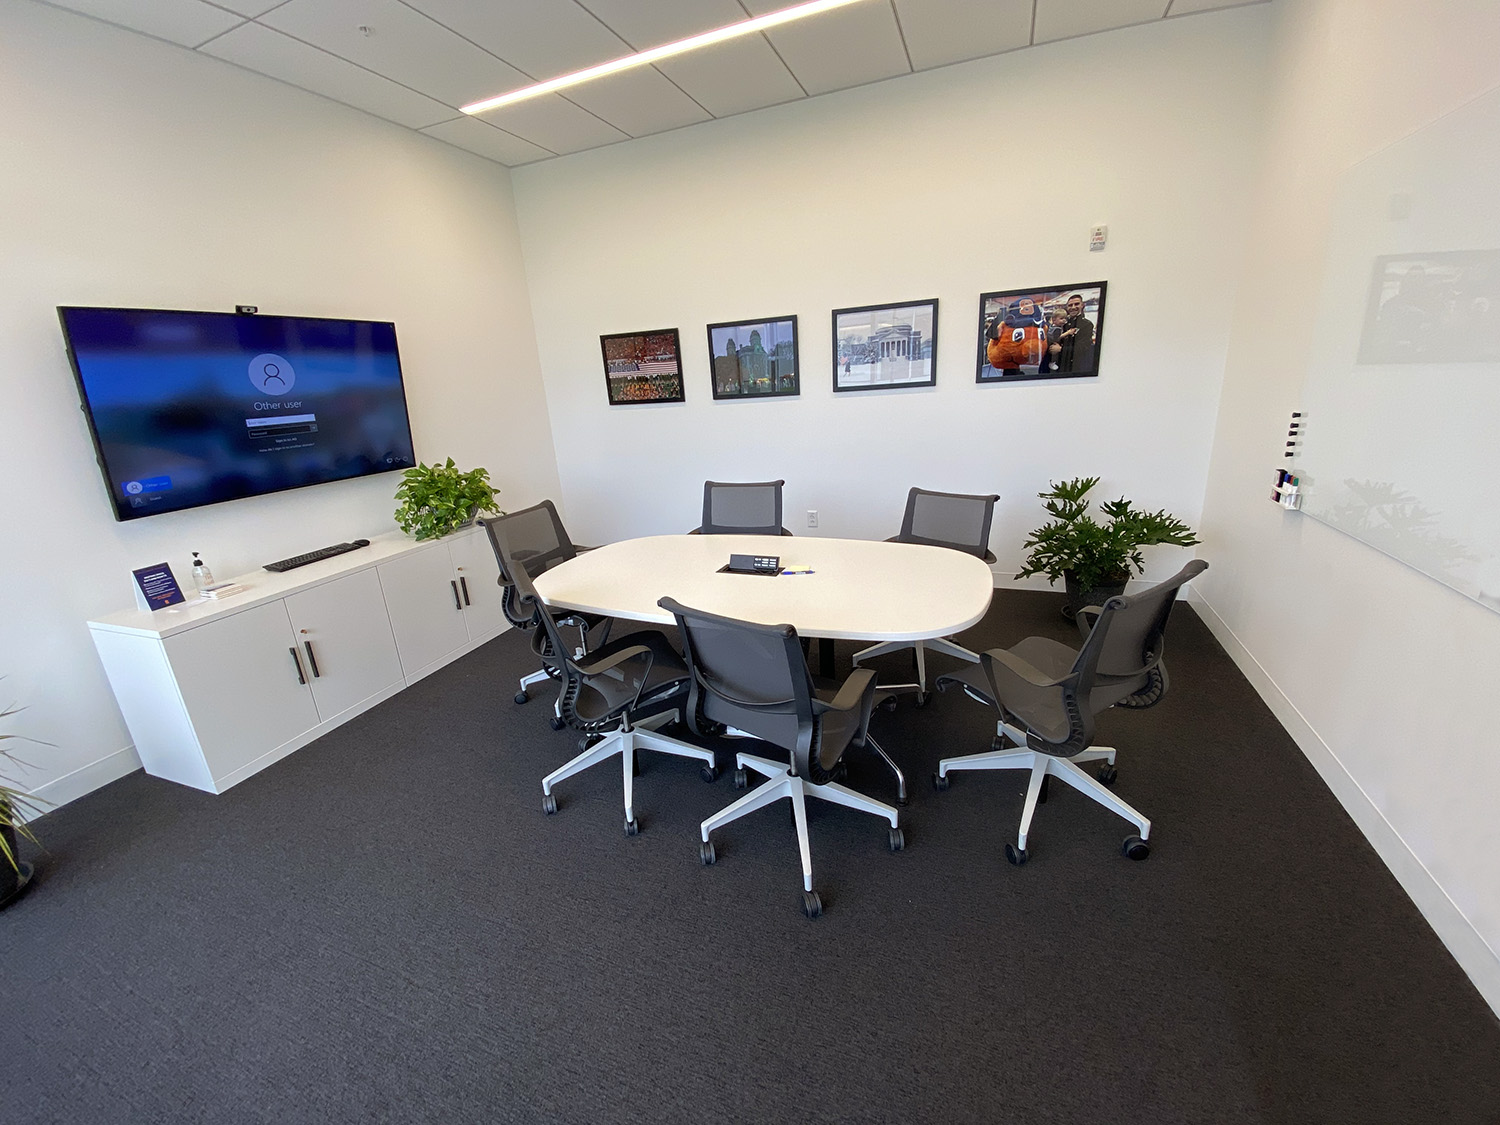 La majorité des espaces de réunion du NVRC ont une configuration similaire à la salle de conférence 301 de l'installation.